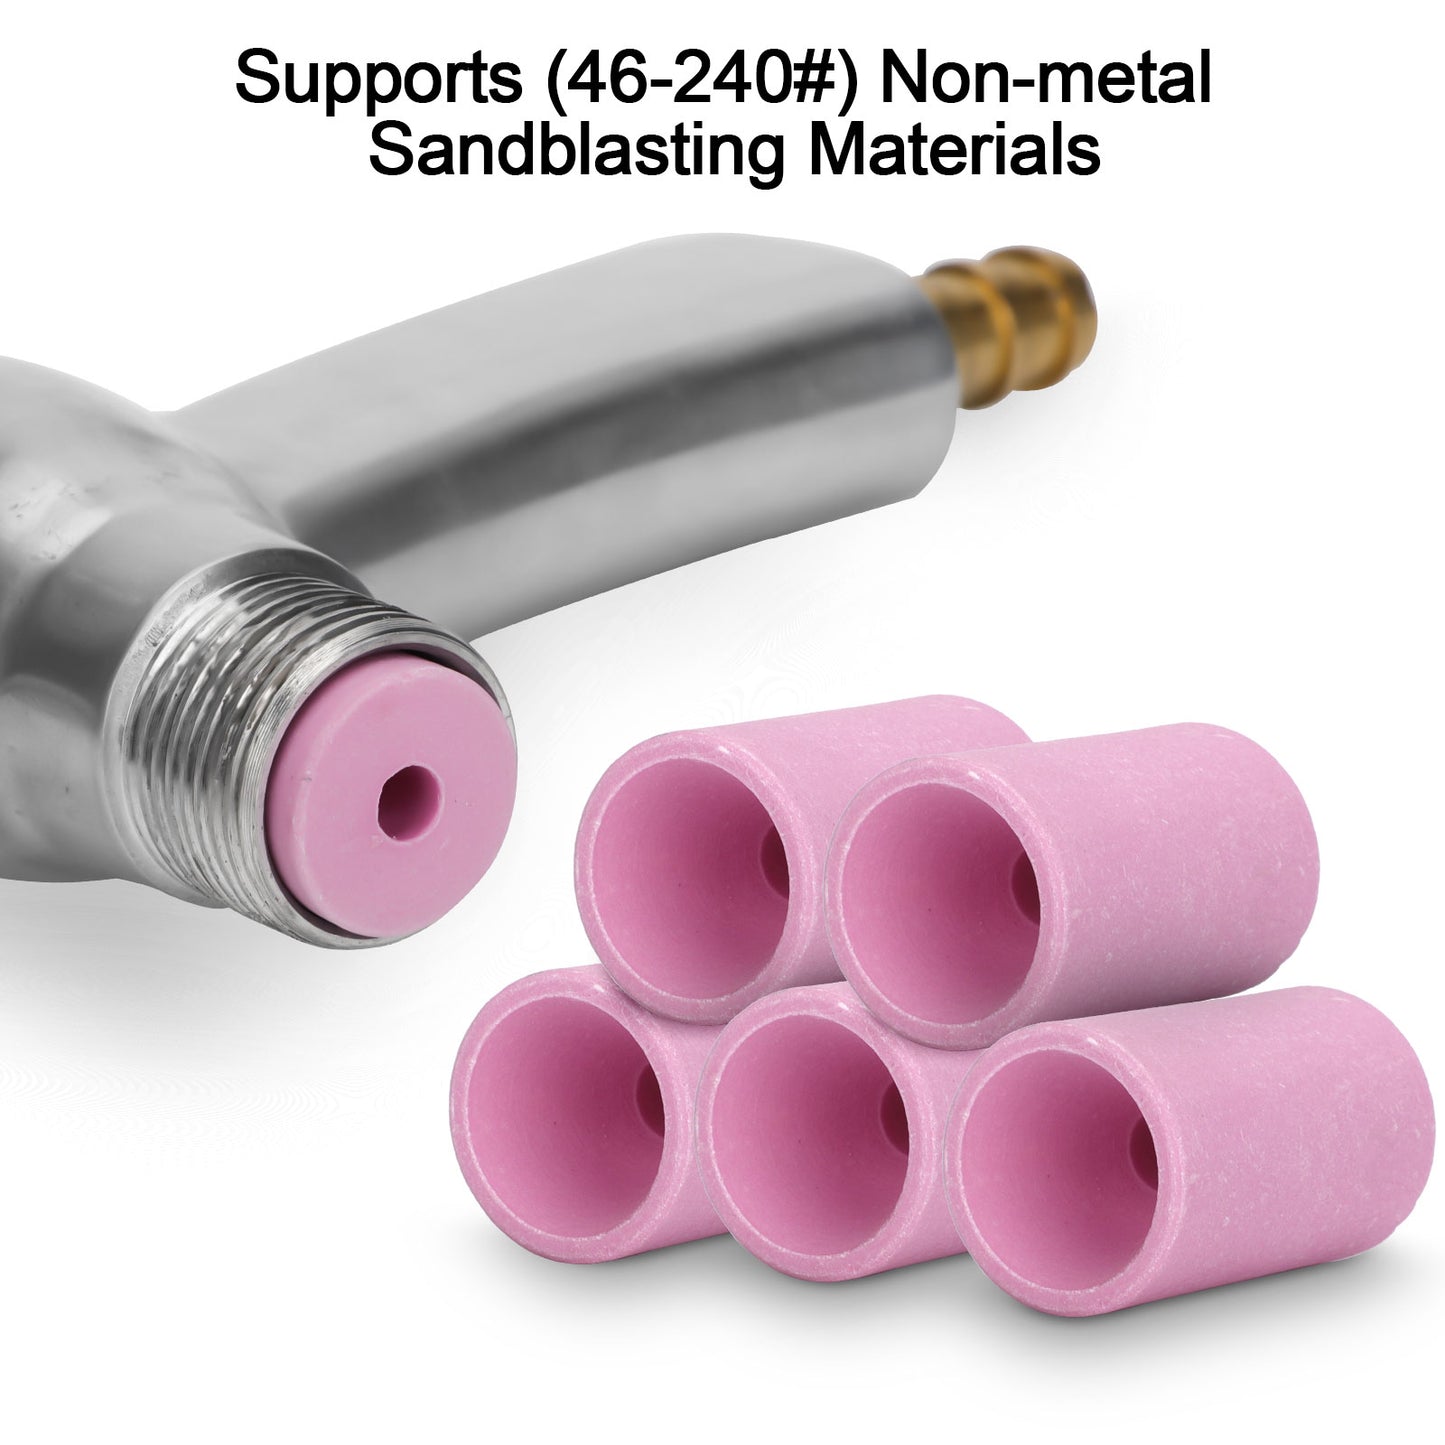 Aluminum Alloy Sand Blaster Gun Kit - Versatile Grinder for Light Metals, Ergonomic Design, 5 Ceramic Nozzles Included